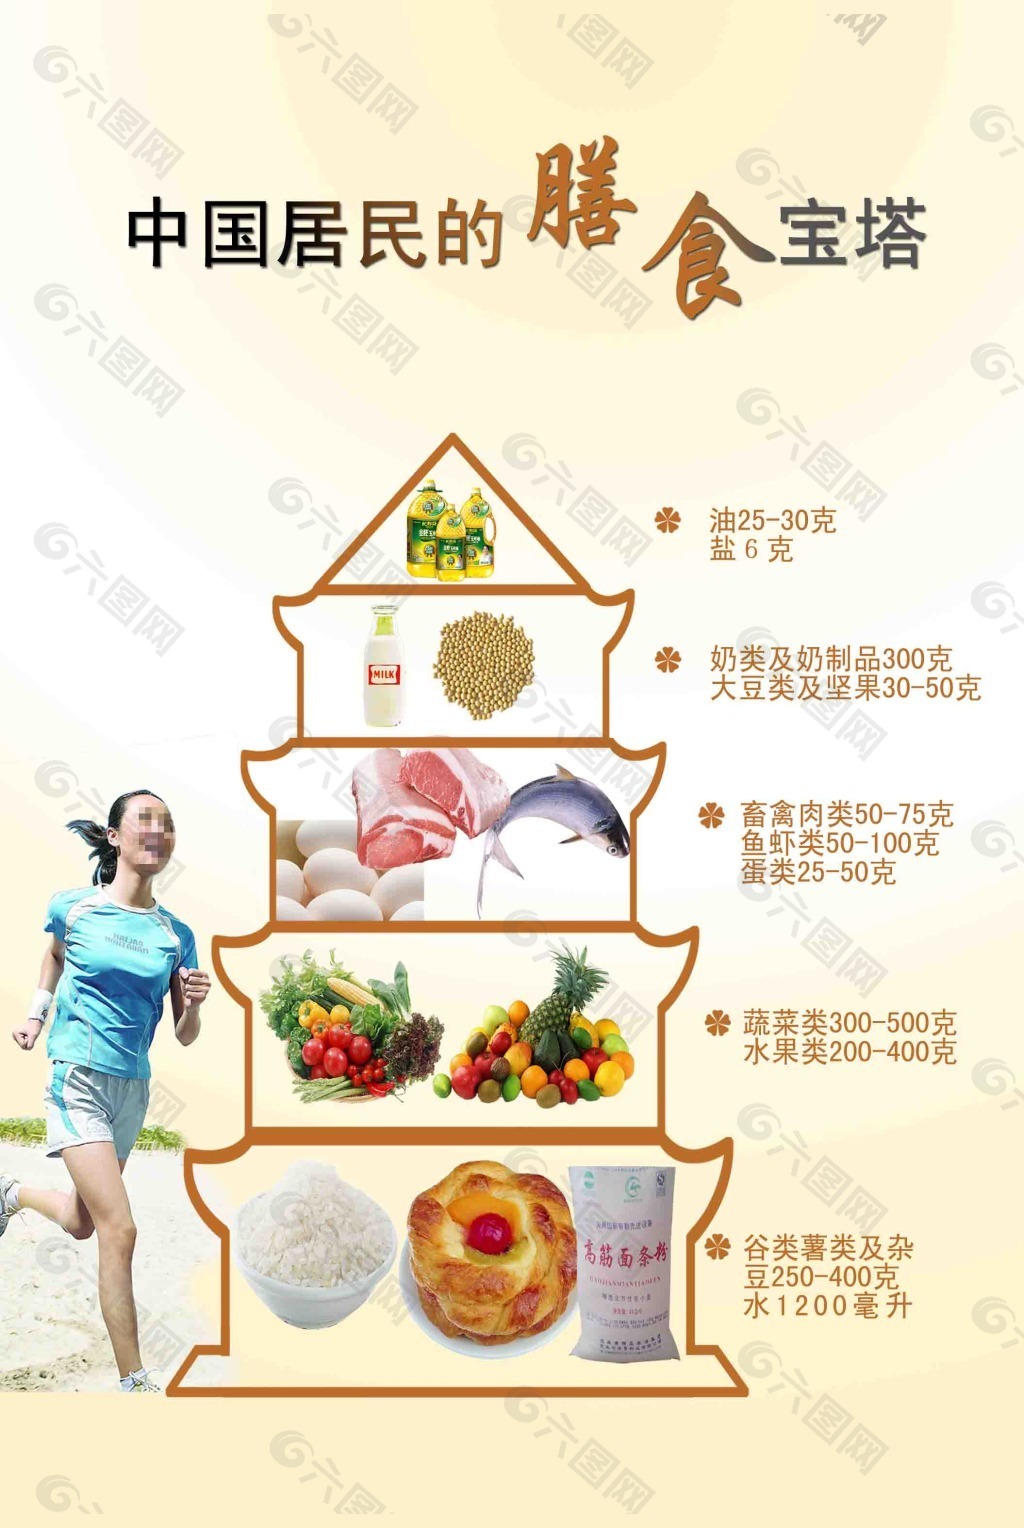 中国居民膳食宝塔